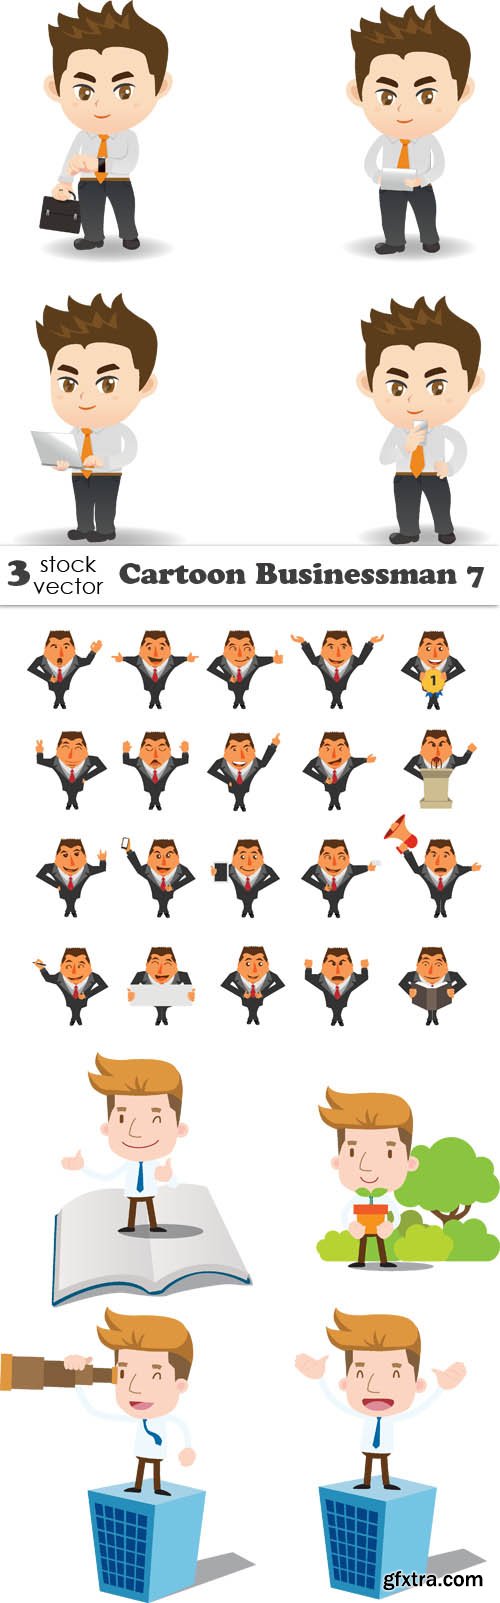 Vectors - Cartoon Businessman 7